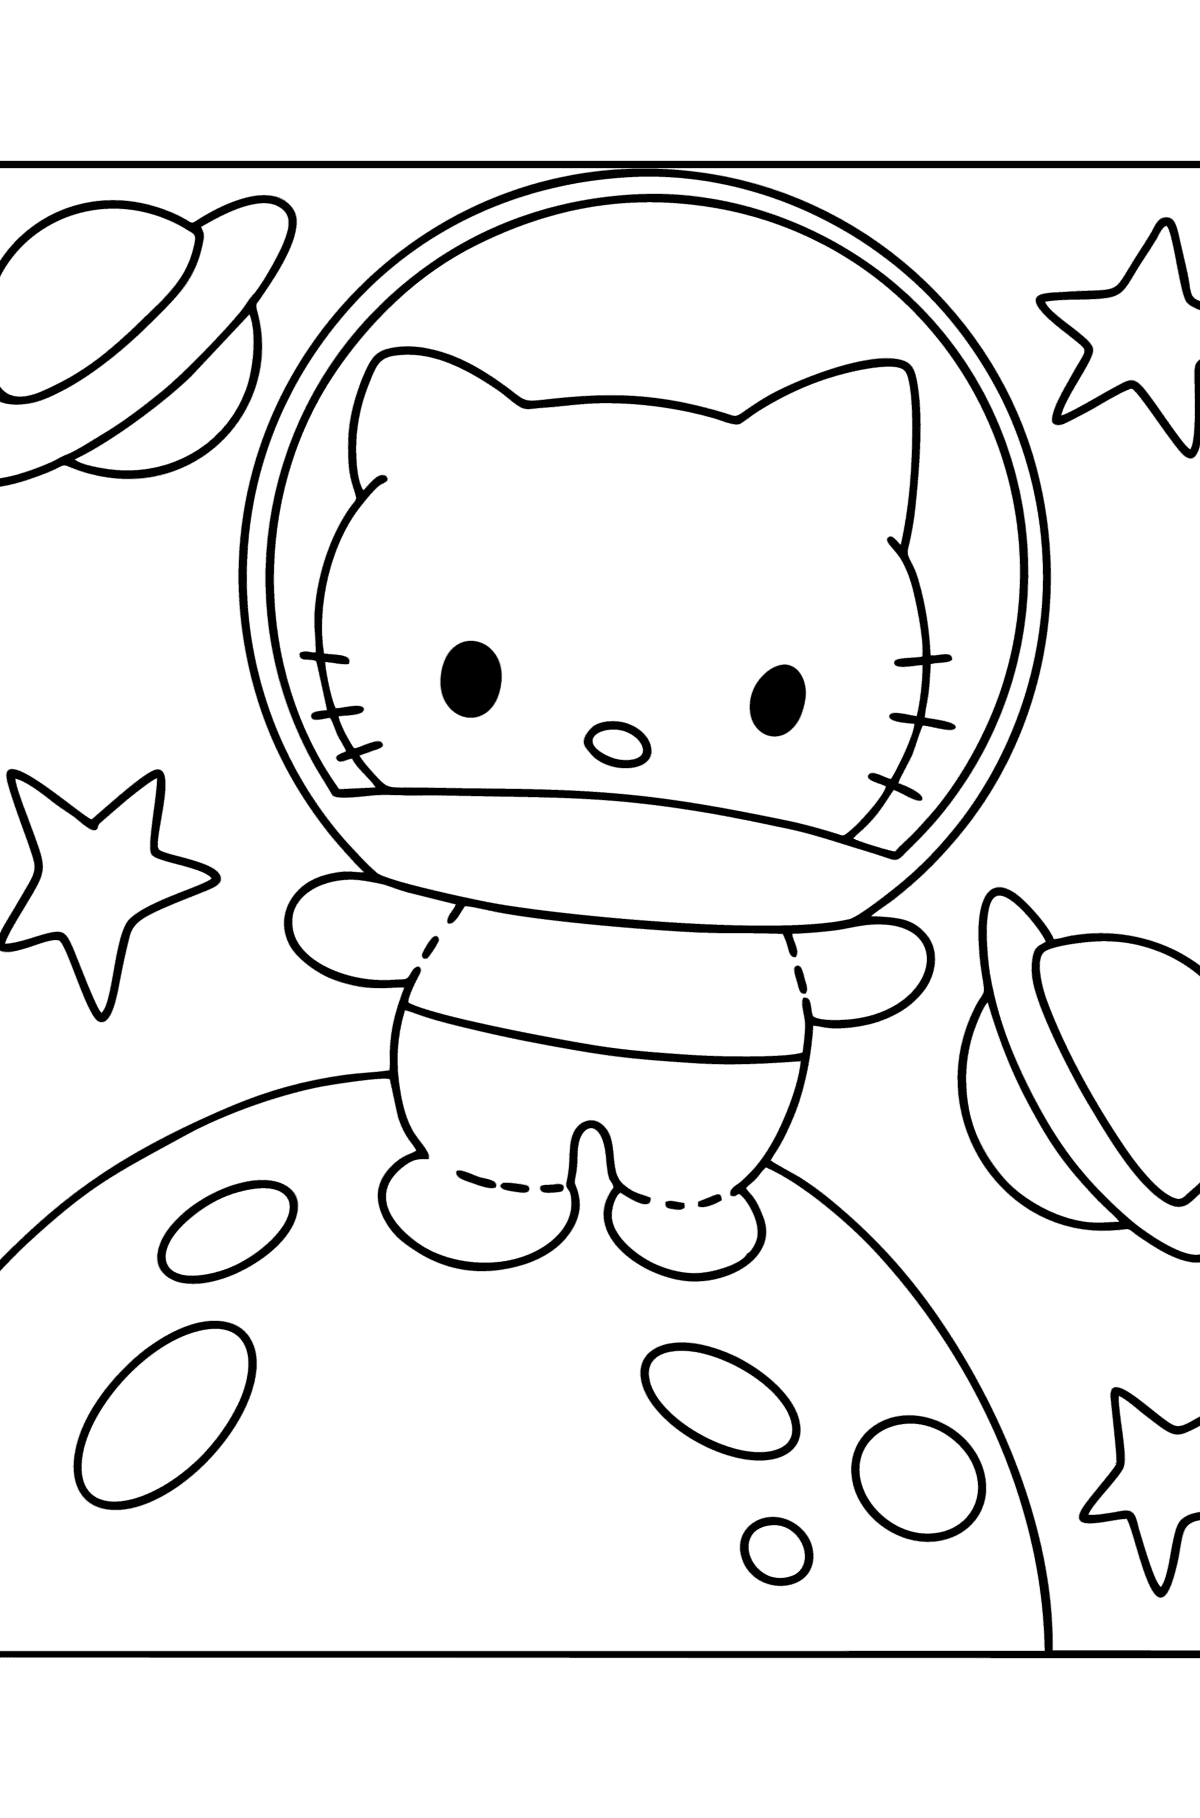 Desenho para colorir Hello Kitty Astronaut - Imagens para Colorir para Crianças